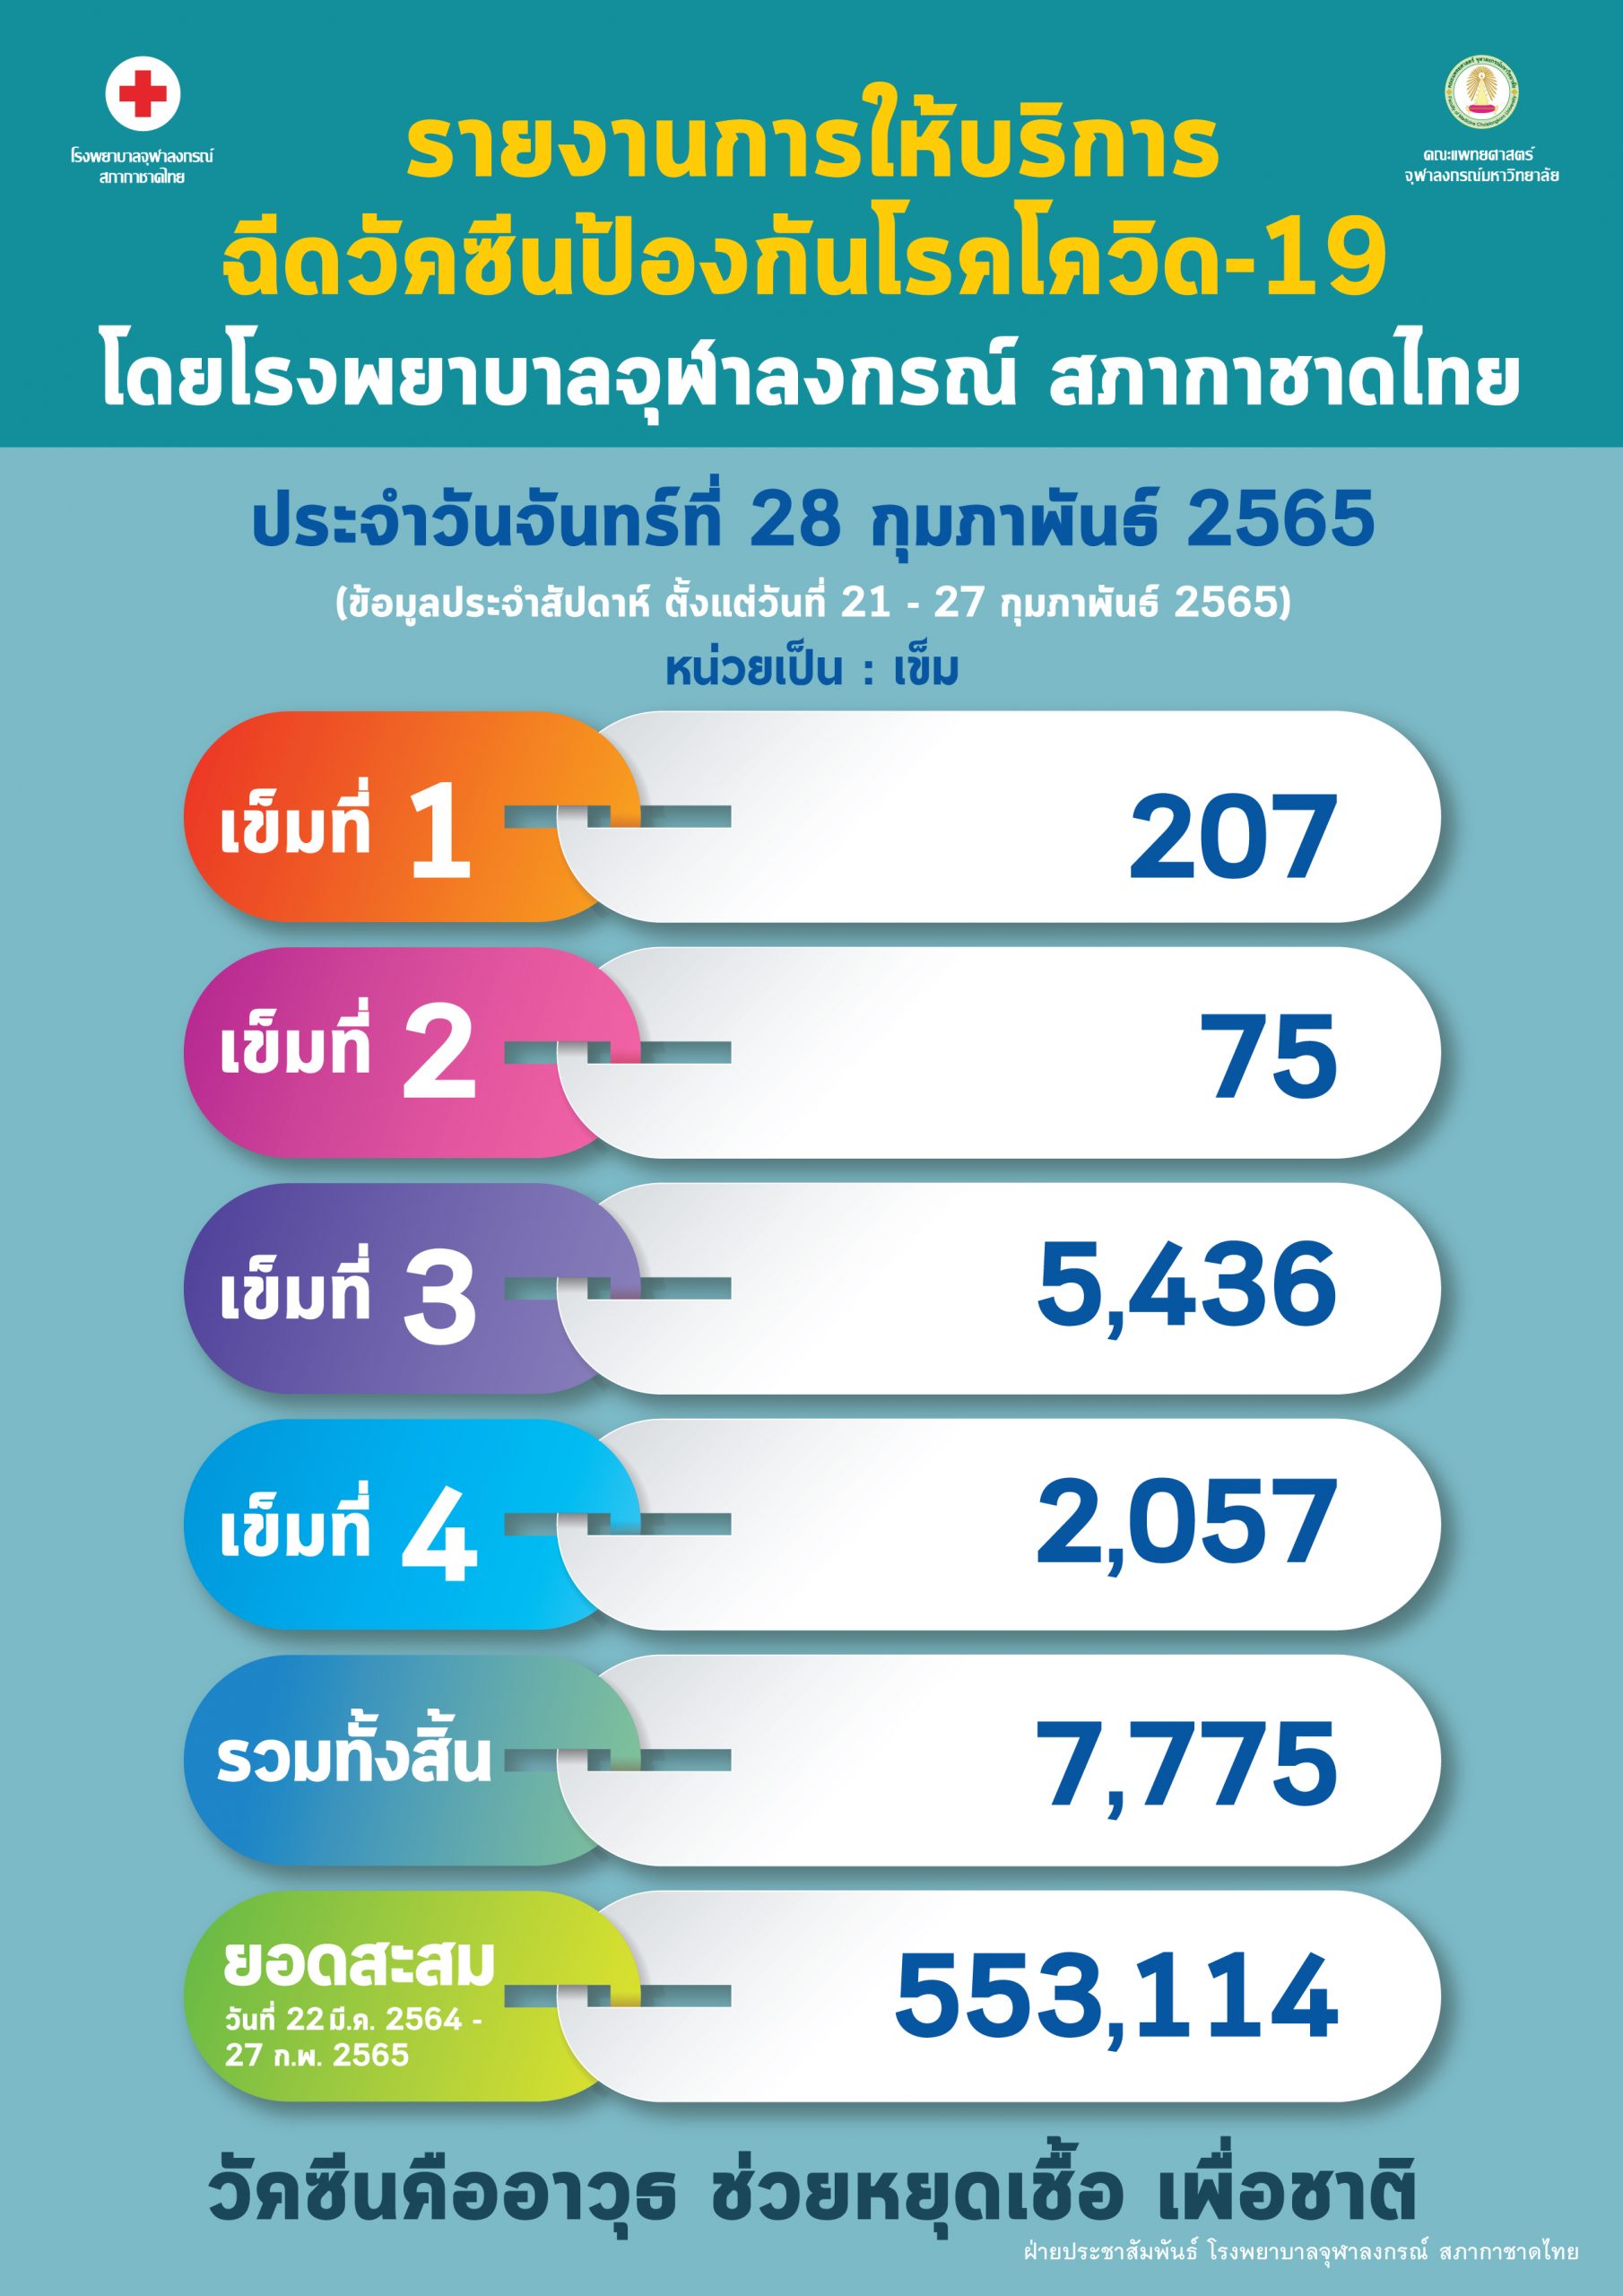 รายงานการให้บริการฉีดวัคซีนป้องกันโรคโควิด-19 โดยโรงพยาบาลจุฬาลงกรณ์ สภากาชาดไทย ประจำวันจันทร์ที่ 28 กุมภาพันธ์ 2565